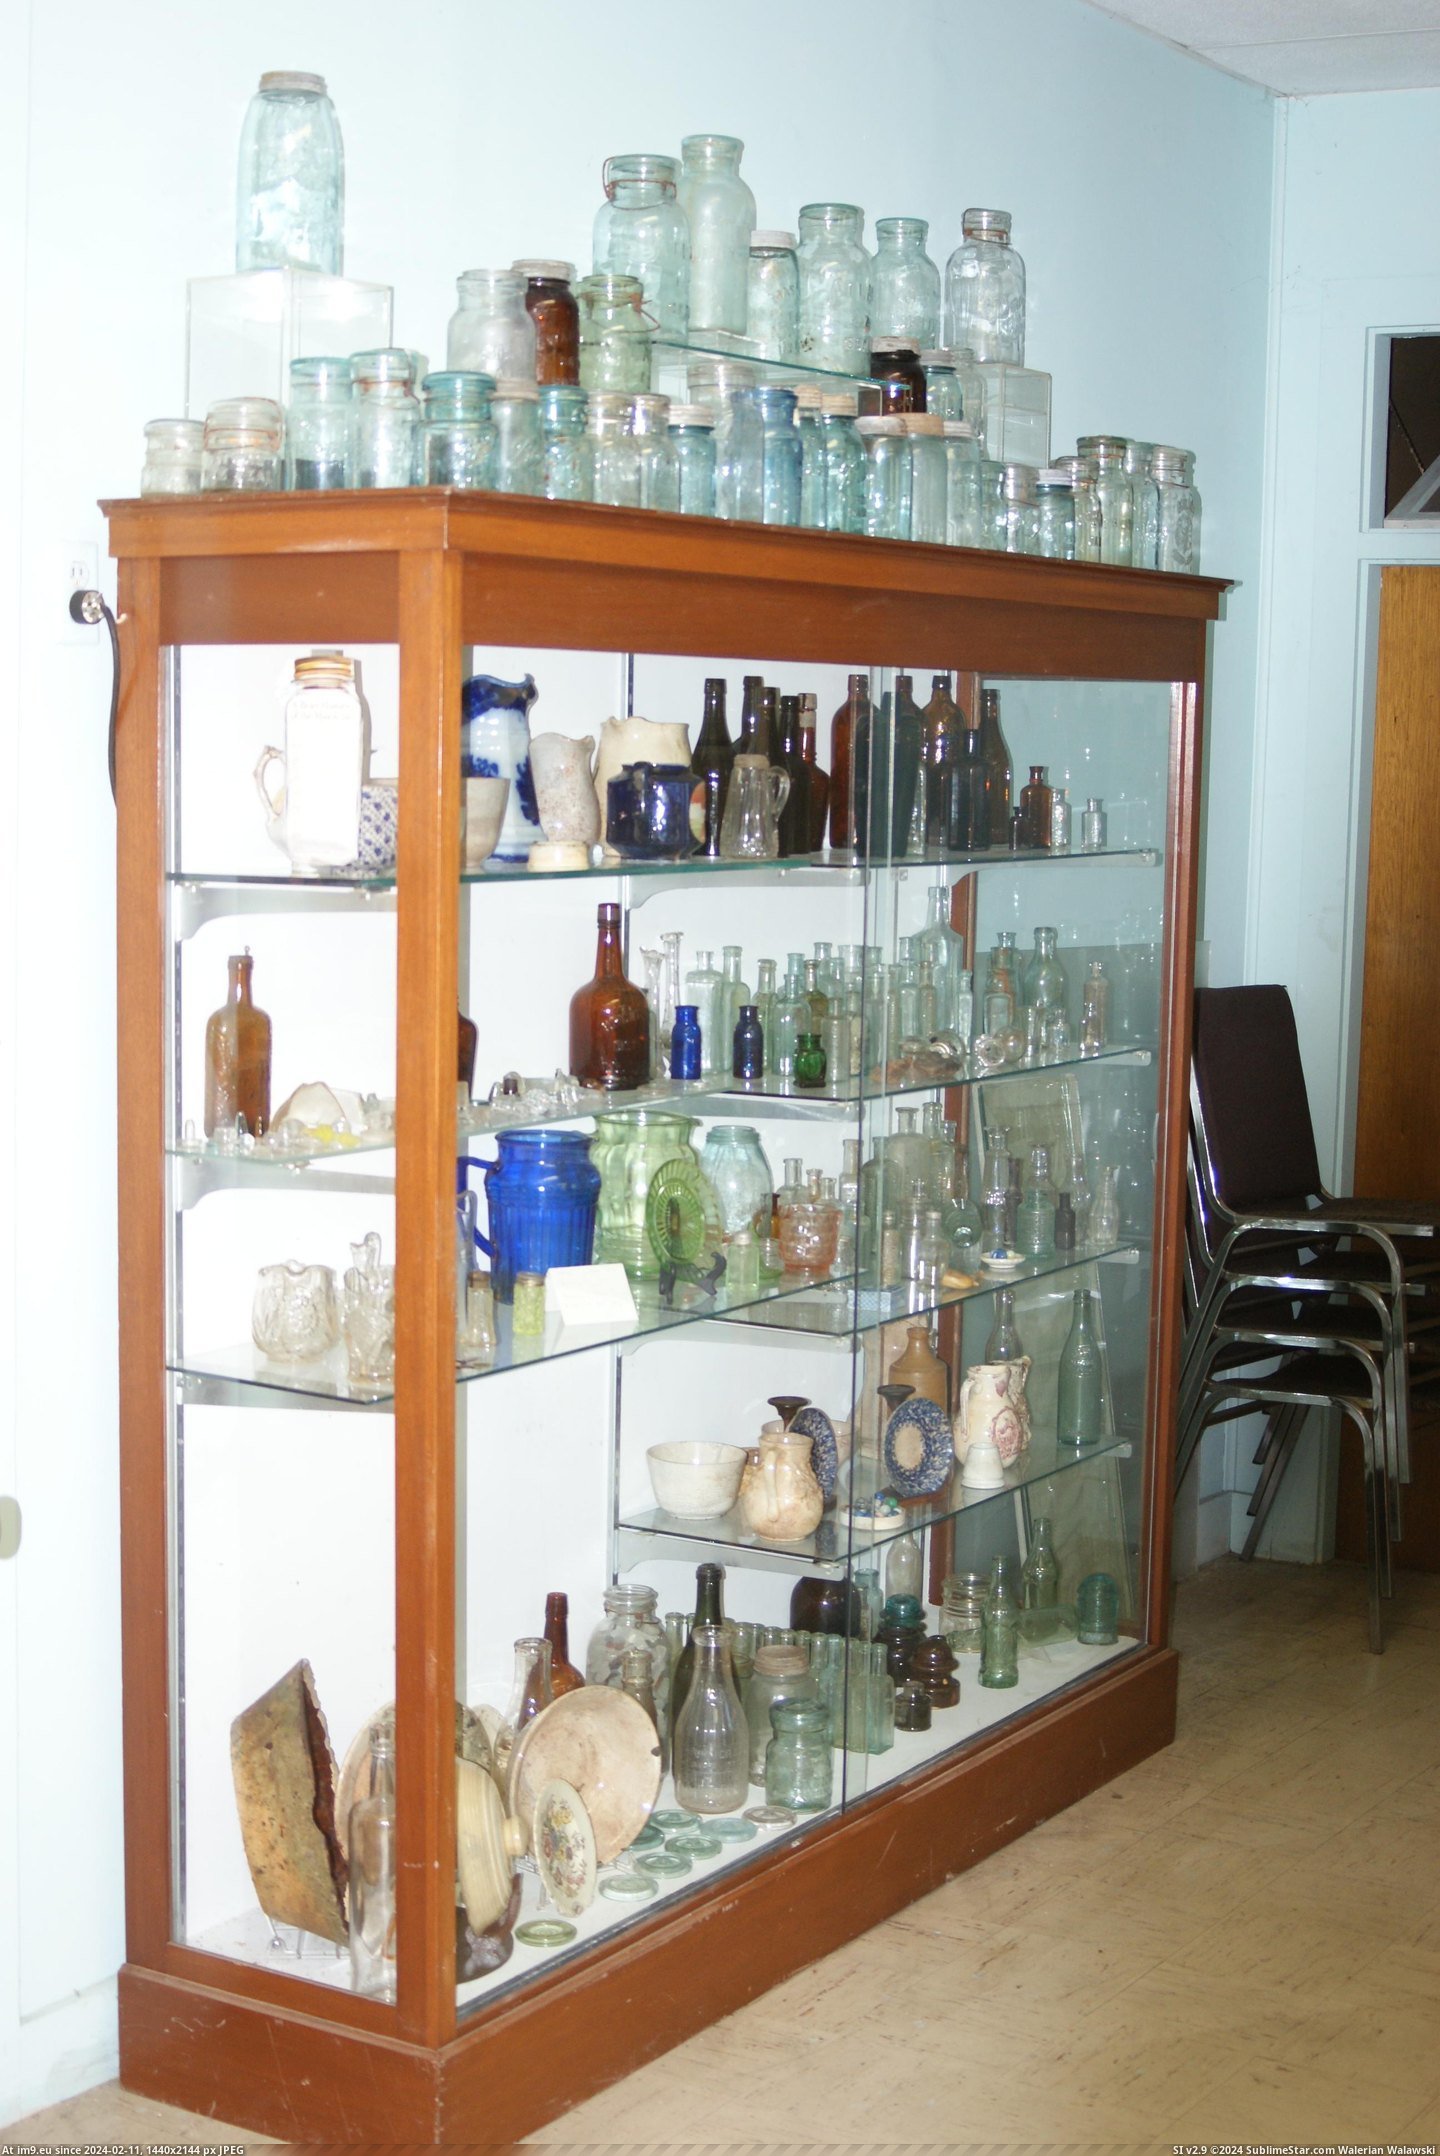 #Museum #Maine #Naples #Bottle MAINE BOTTLE MUSEUM NAPLES (1) Pic. (Изображение из альбом MAINE BOTTLE MUSEUM))